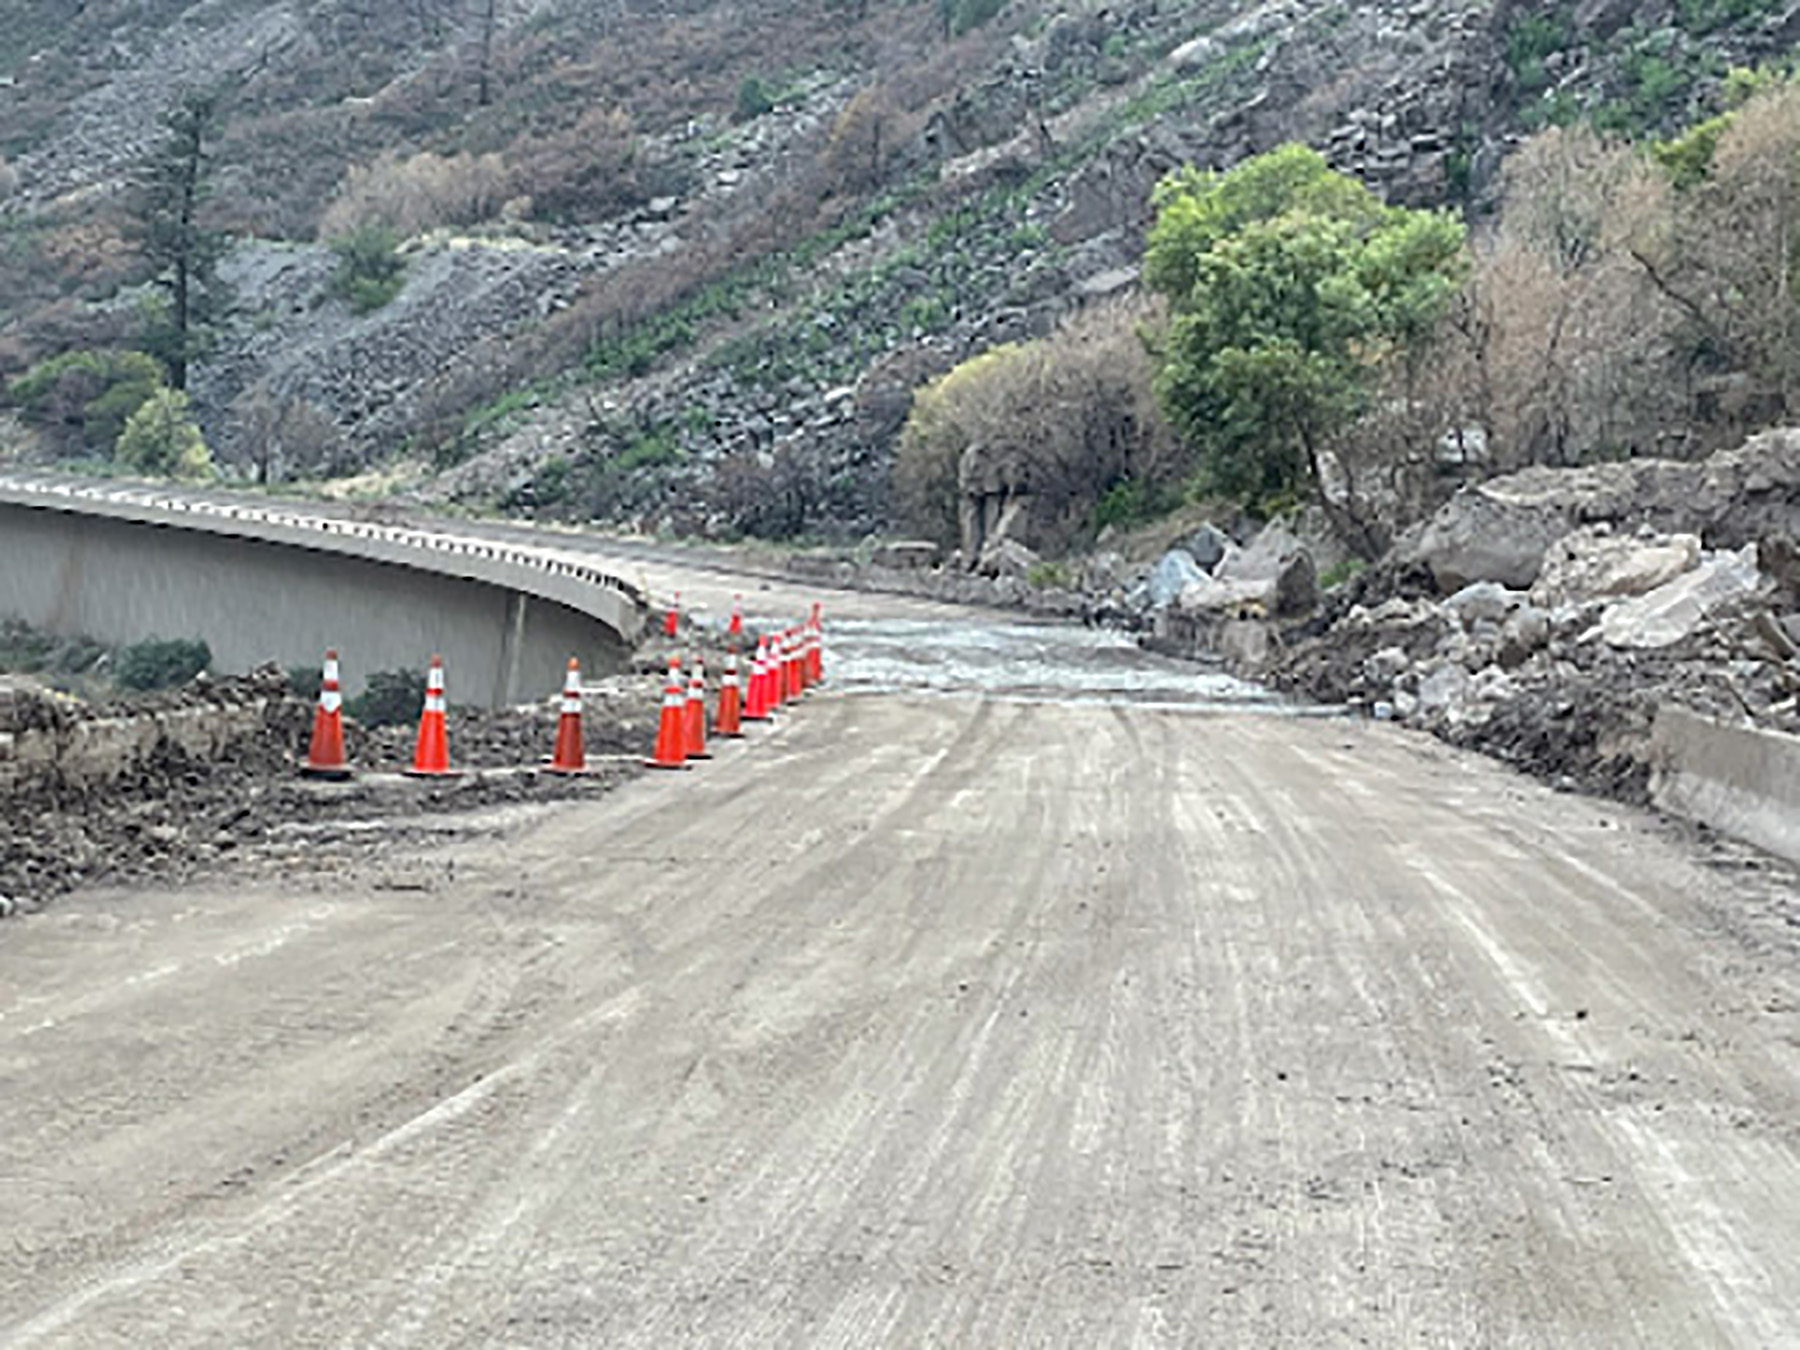 I-70 in Glenwood Canyon on Aug. 8, 2021.